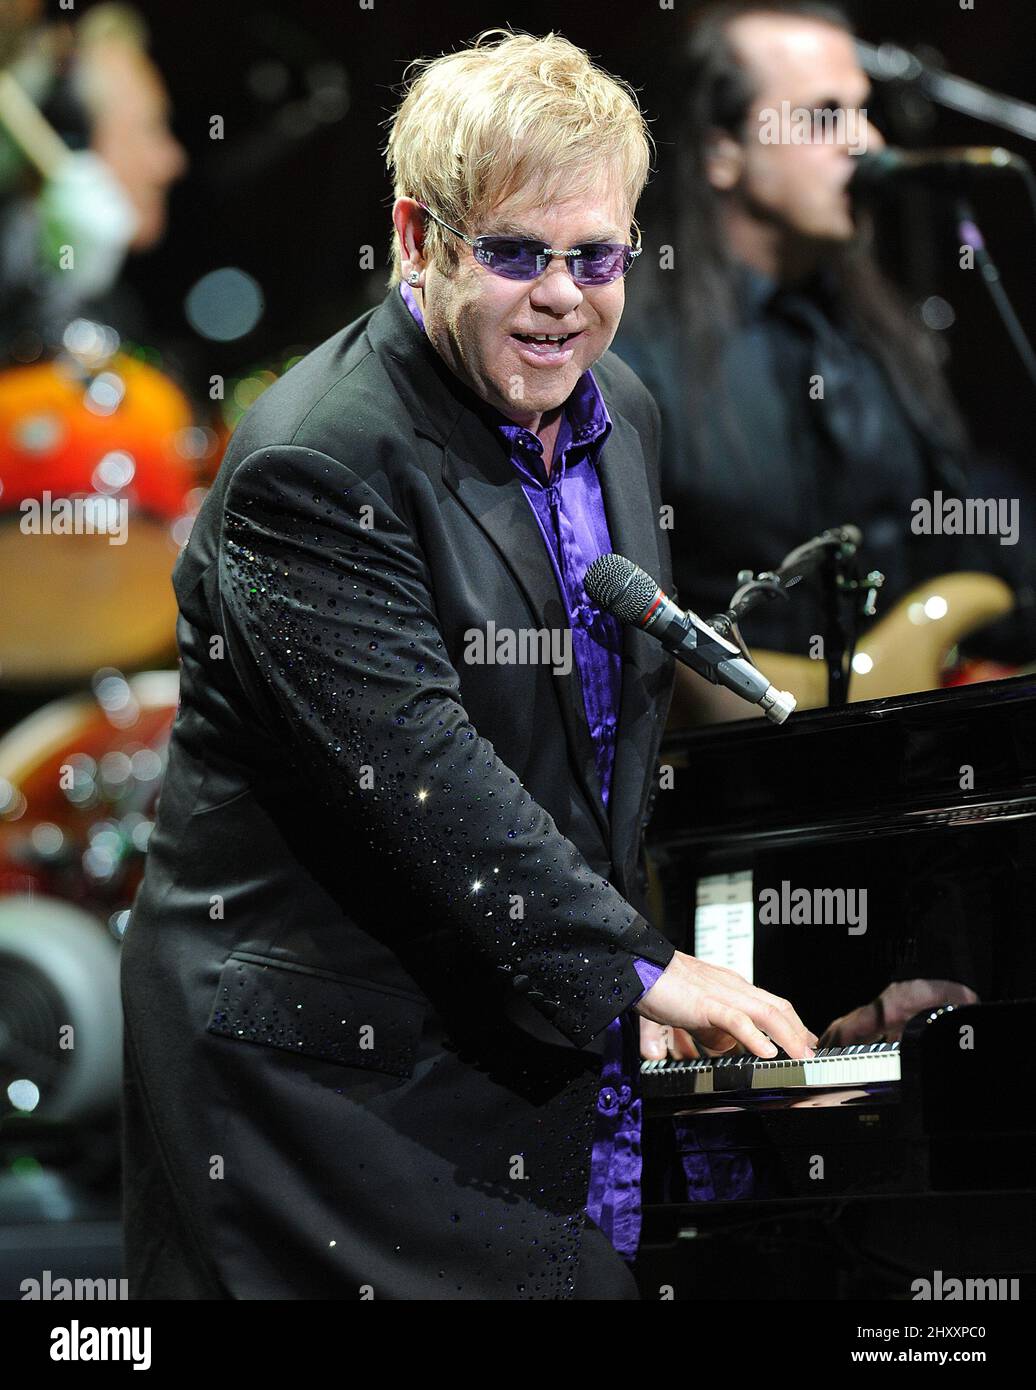 Elton John joue en concert à la PNC Arena de Raleigh, en Caroline du Nord, aux États-Unis. Banque D'Images